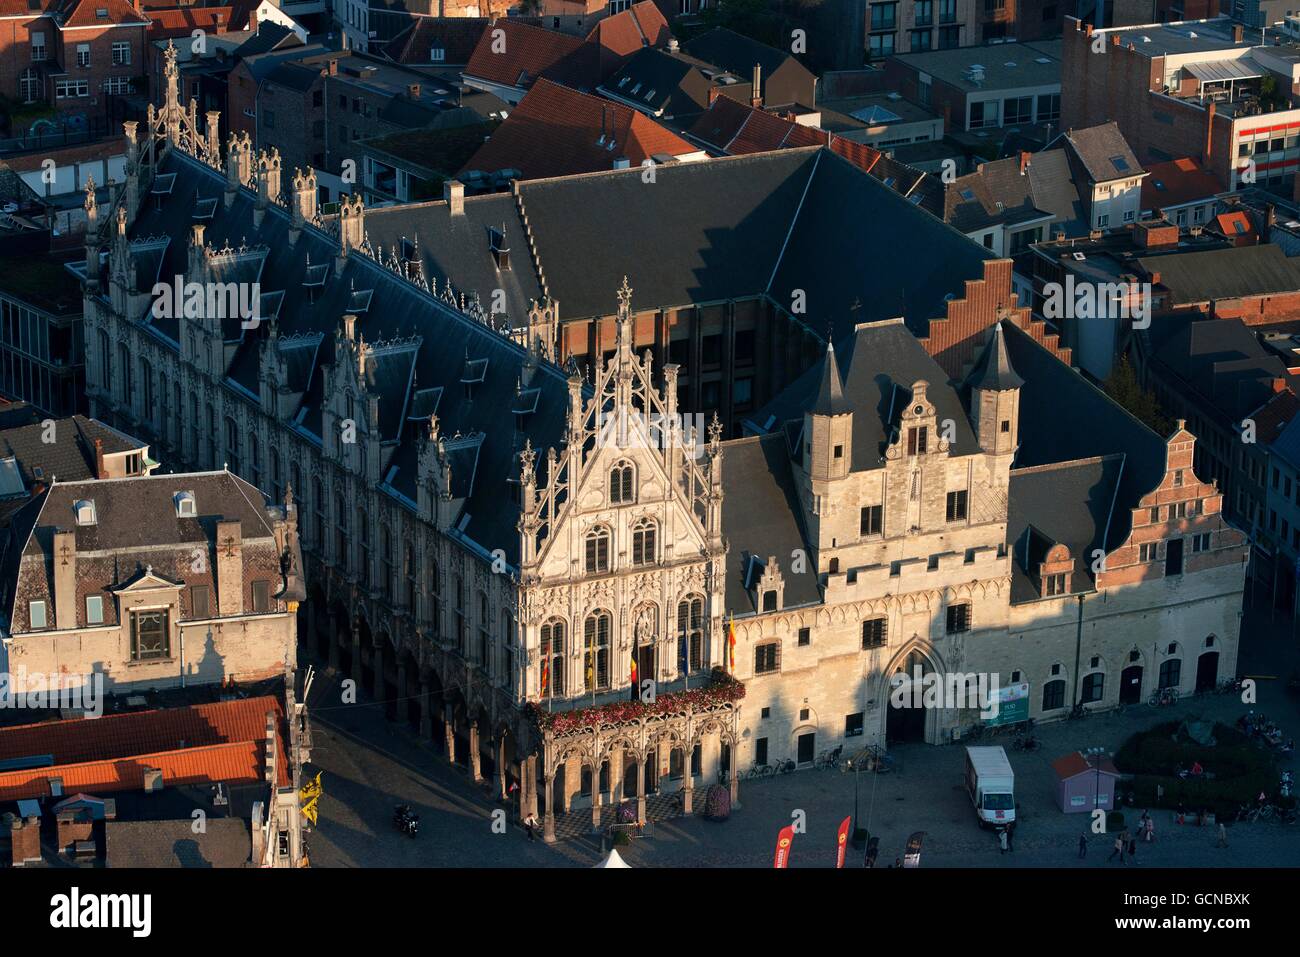 Stadhuis (Hôtel de Ville) et le palais du Grand Conseil dans le Grote Markt (Grand Place), Mechelen (Malines), Flandre orientale, Belgique Banque D'Images